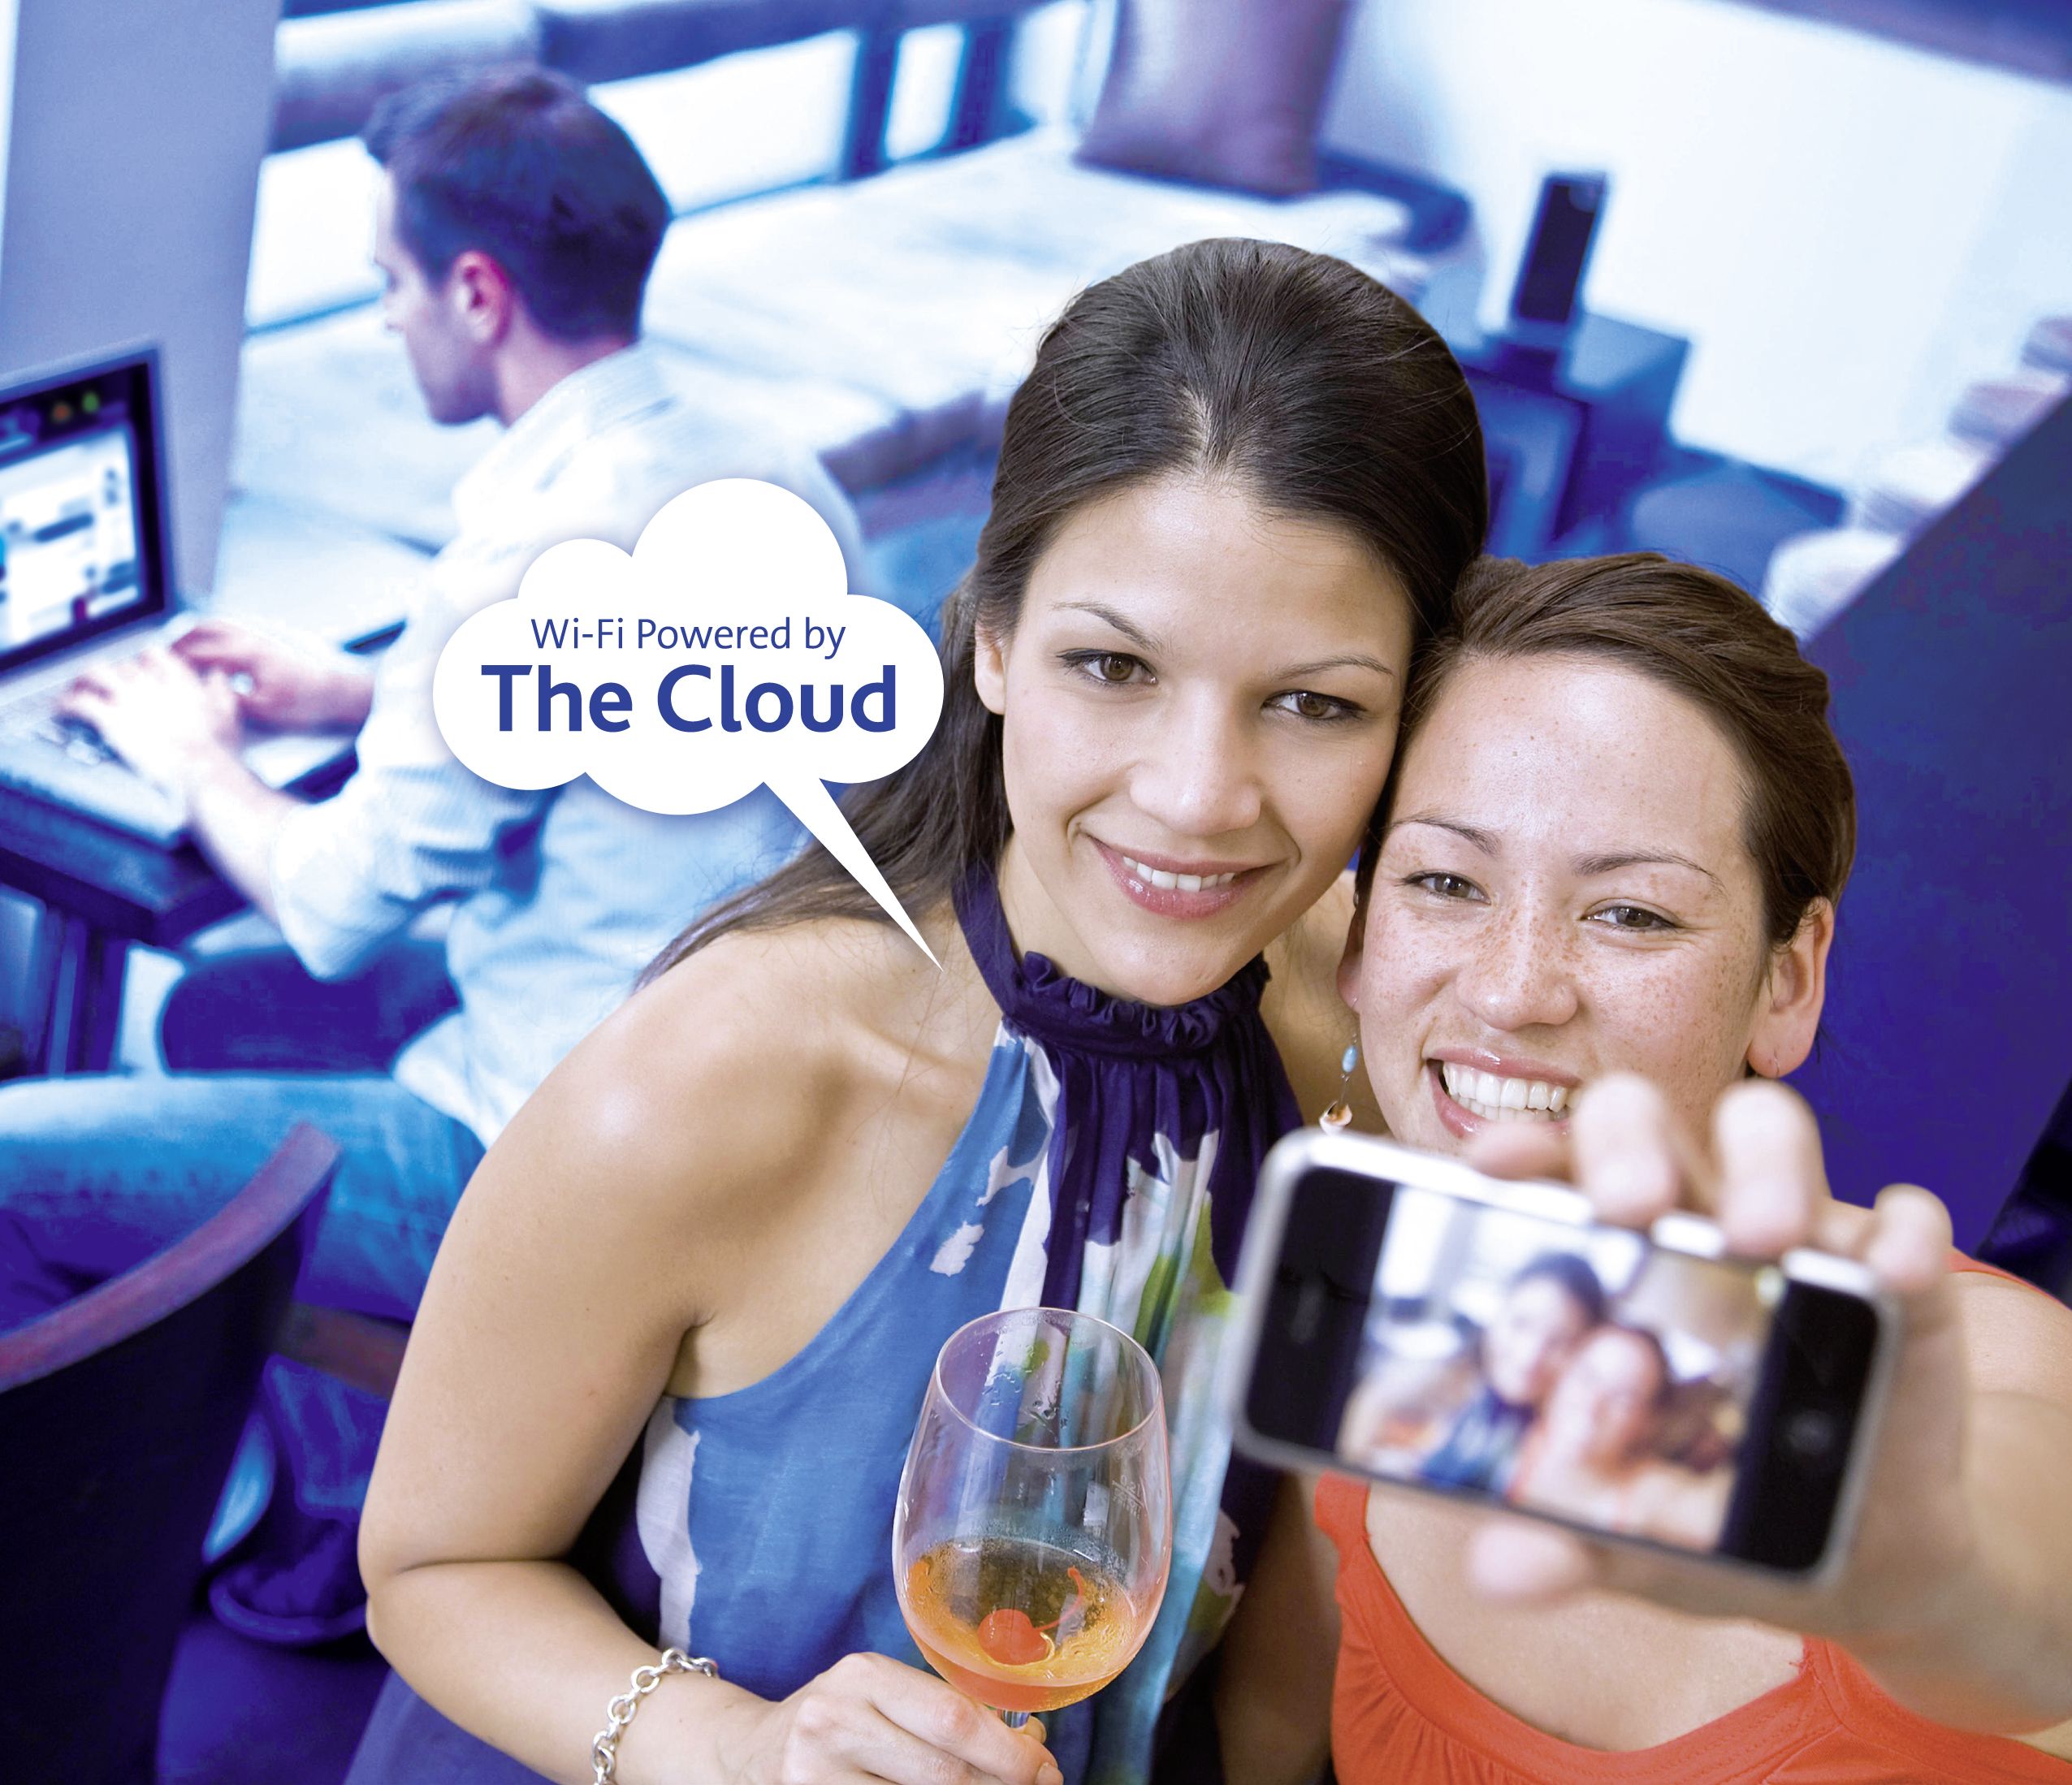 Das Produkt „Solo Wi-Fi“ von The Cloud bietet ab 14,90 Euro im Monat alles, was Gastronomen und Gästen wichtig ist: Sicherheit, Gesetzeskonformität, einfache Bedienung und schnelle Authentifizierung.